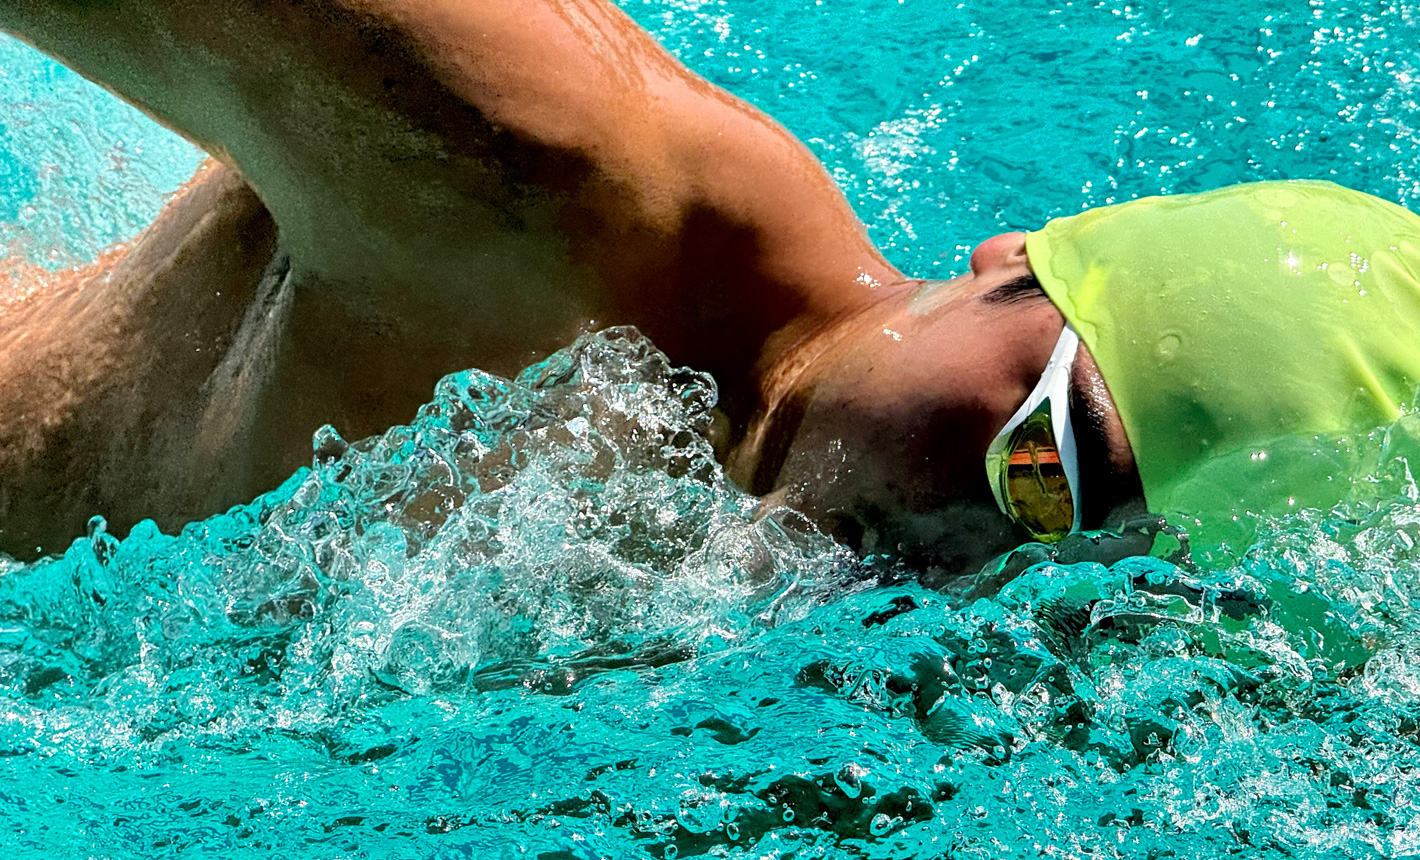 Một tấm ảnh được phóng to, rất chi tiết về một người đang bơi trong hồ bơi với nước bắn xung quanh anh ấy